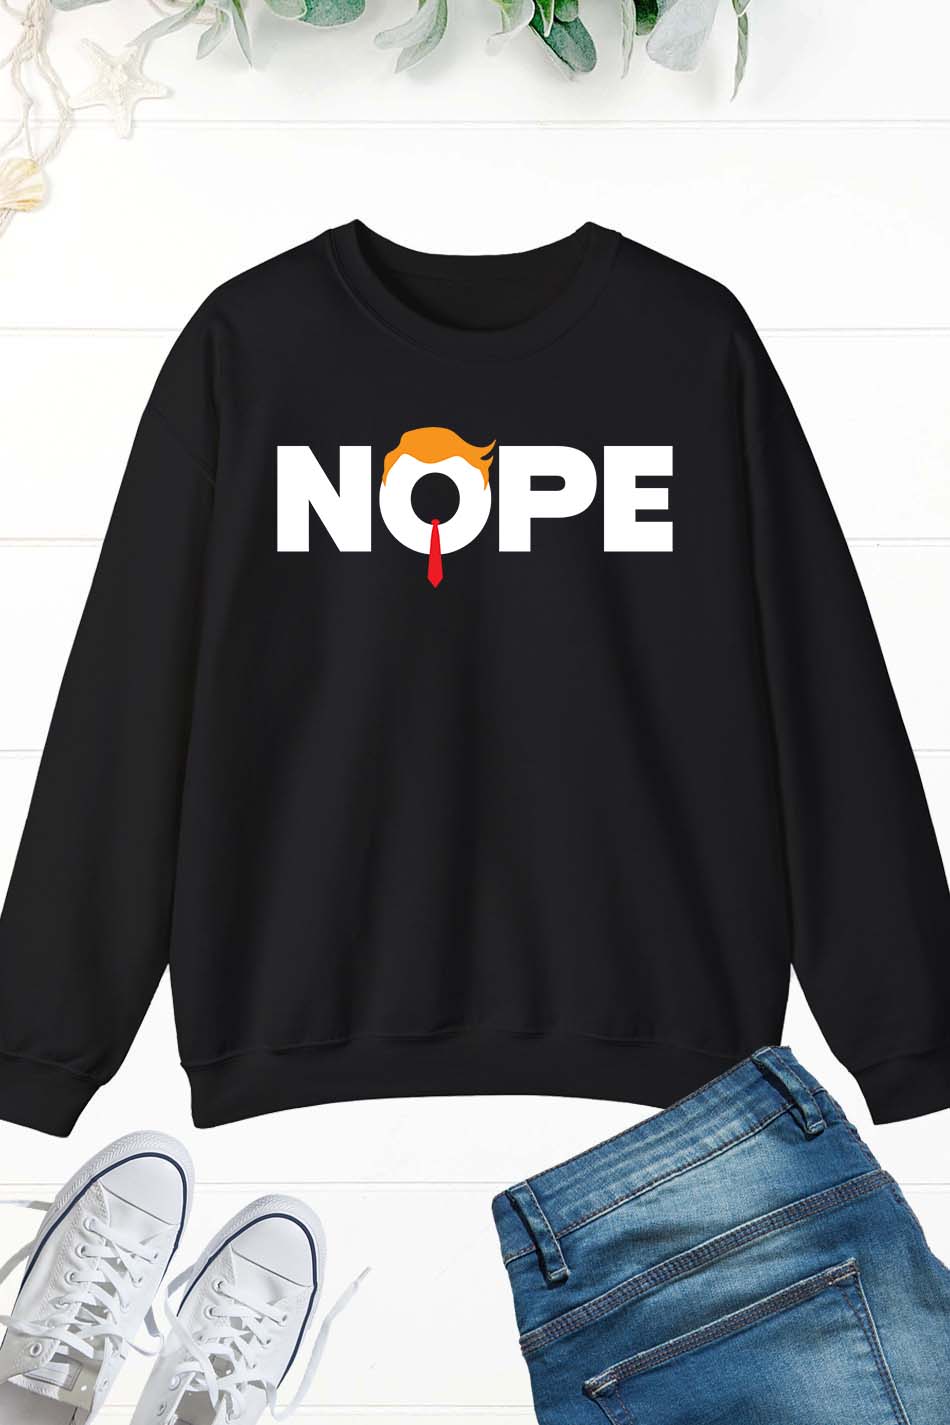 Nope Not Again Trump Sweatshirt